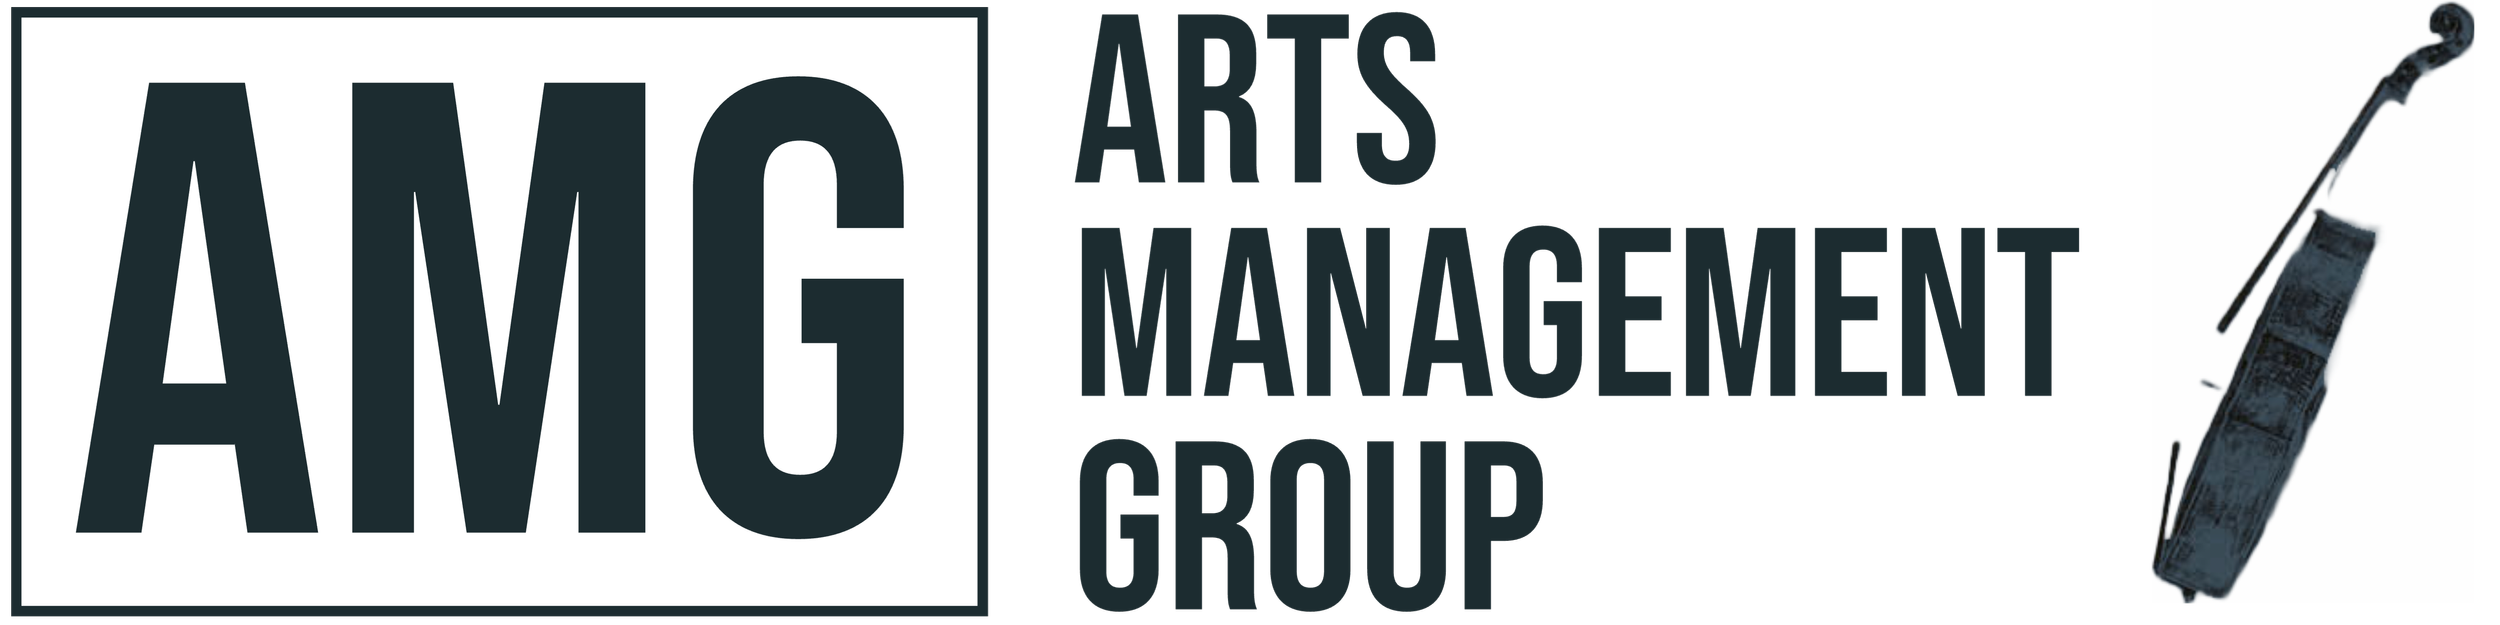 Arts Management Group